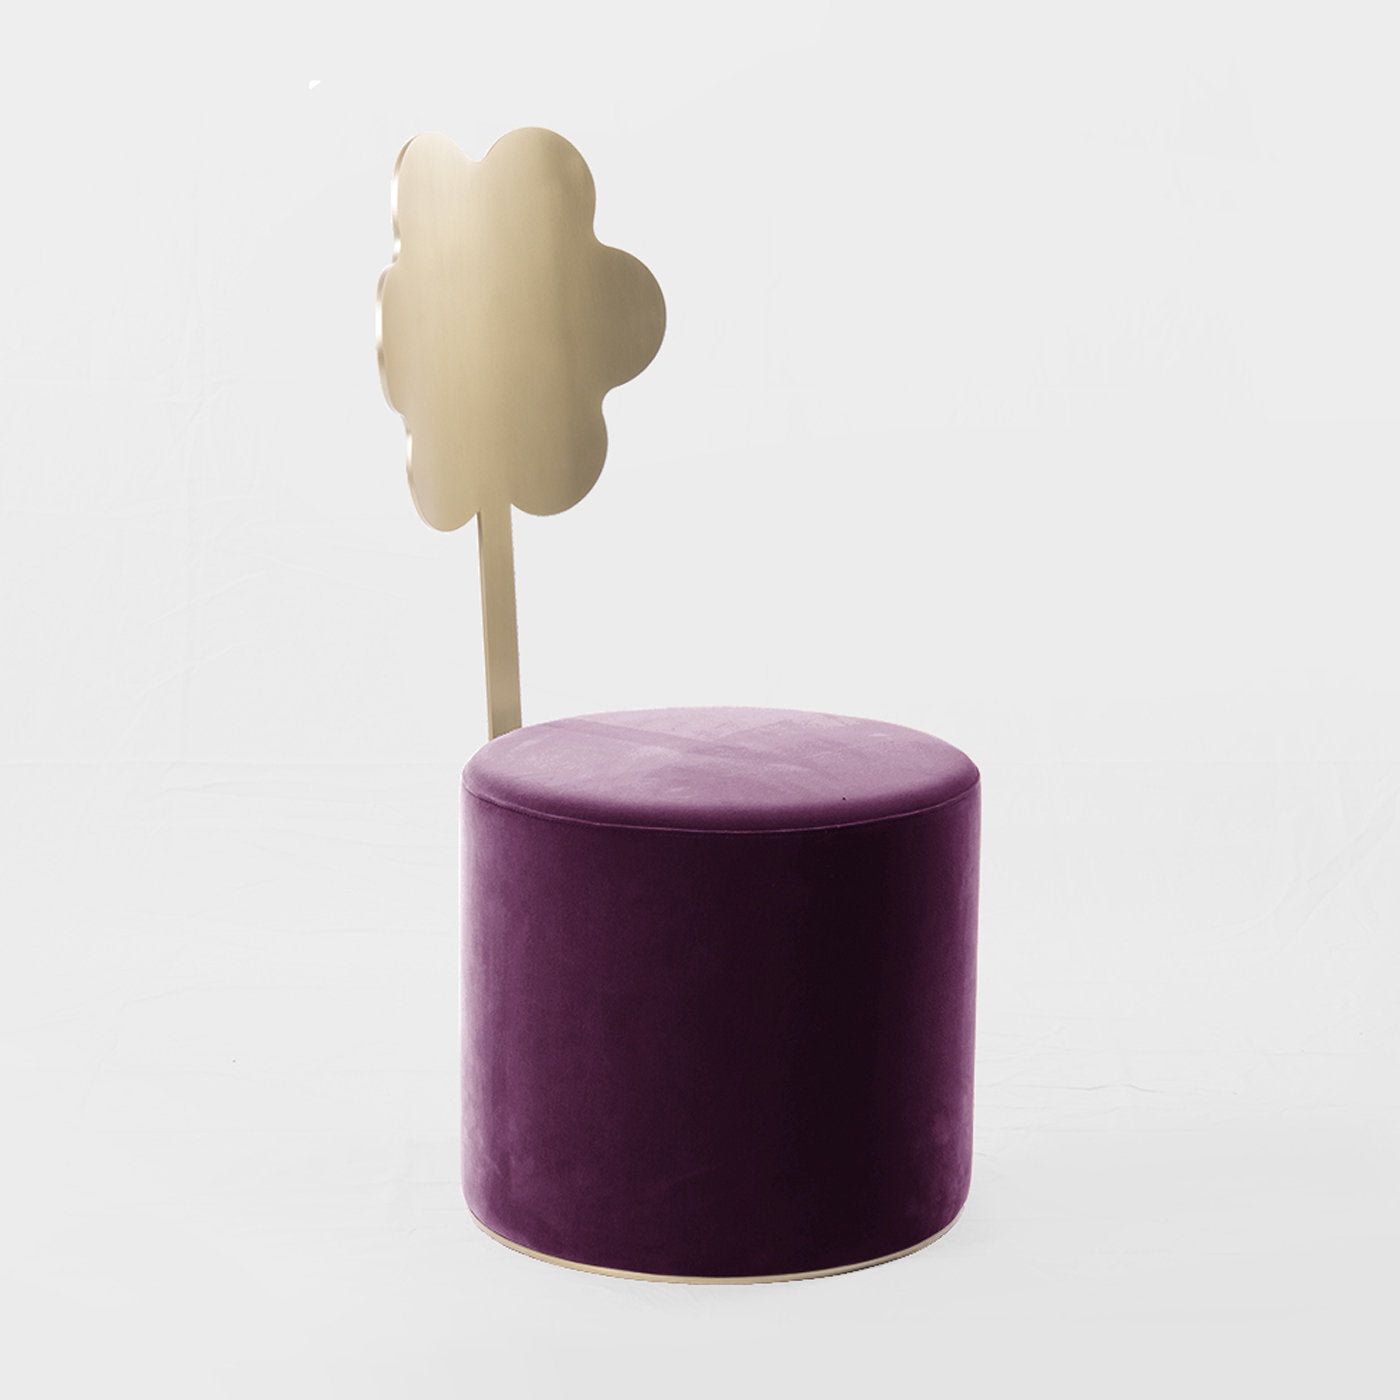 Daisy Purple Pouf by Artefatto Design Studio - Alternative view 1